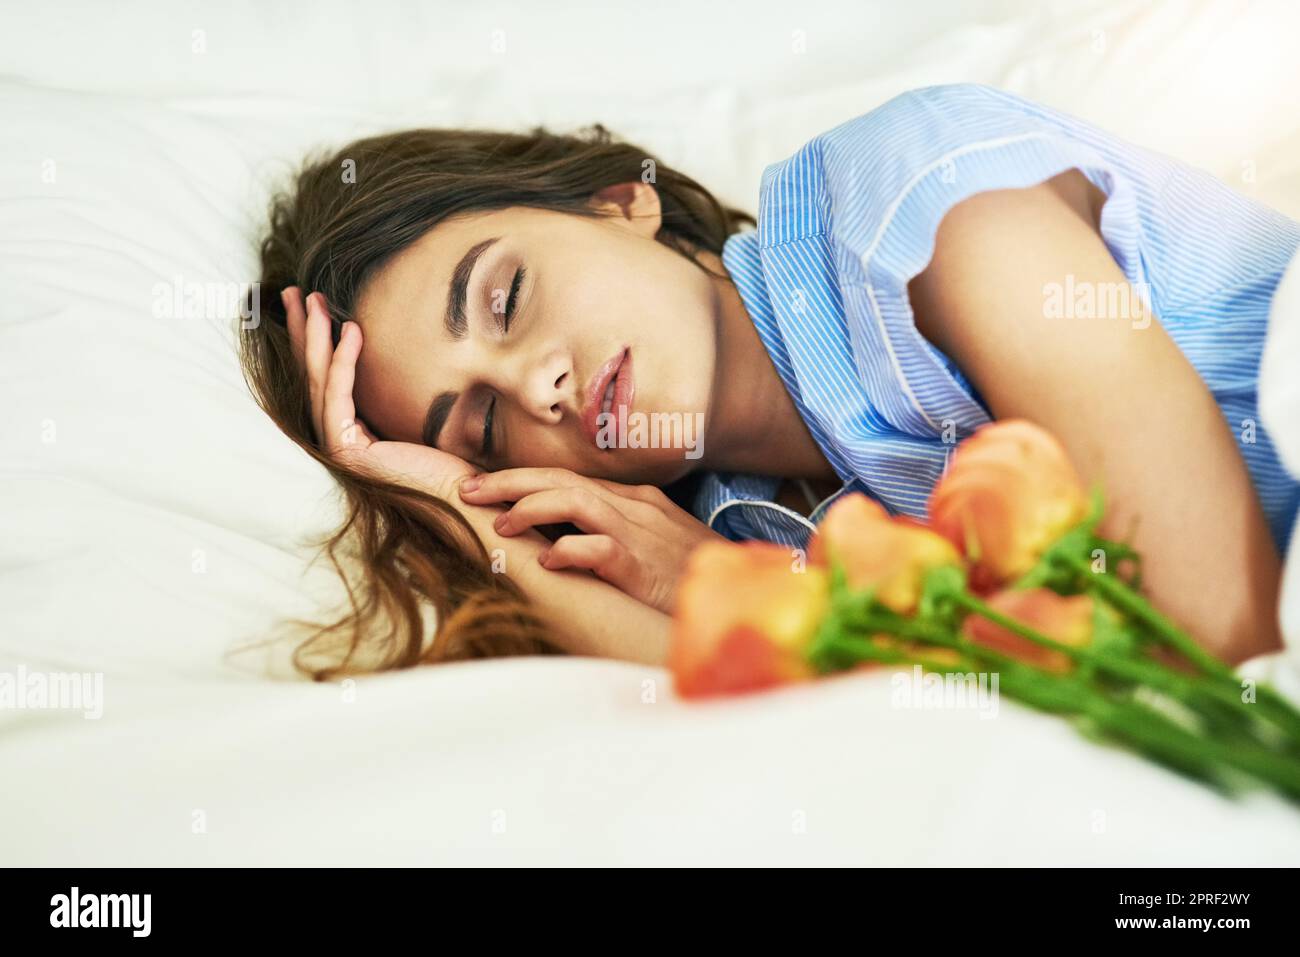 Shell erwachen zu einer netten Überraschung. Eine attraktive junge Frau schläft neben einigen Blumen in ihrem Bett. Stockfoto